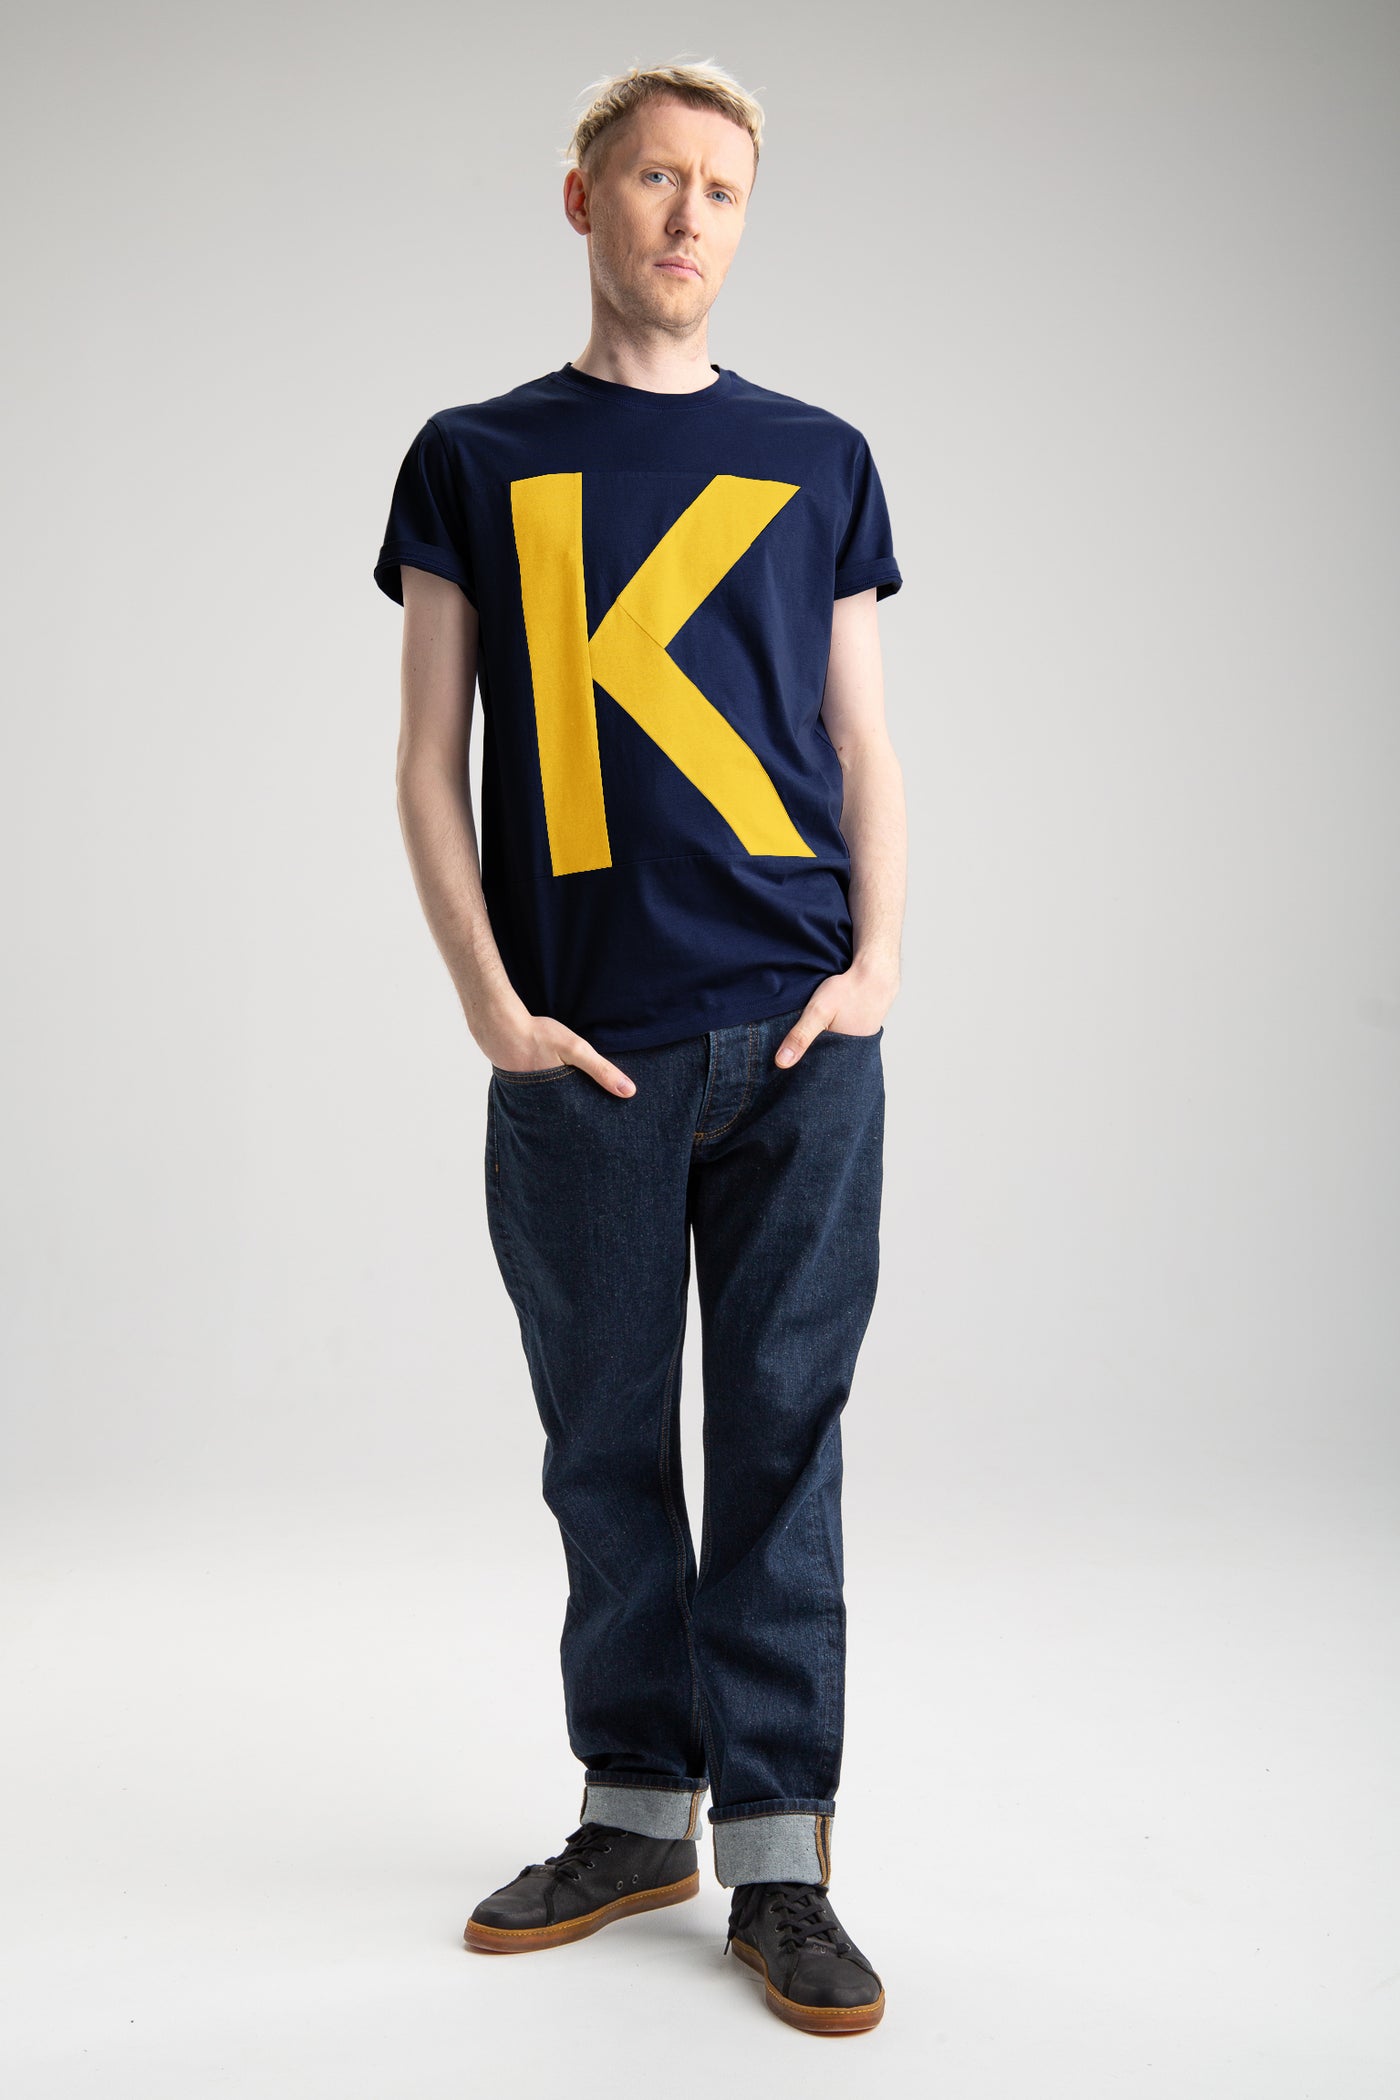 Meeste up-shirt, K motiiviga | Sinine, kollane